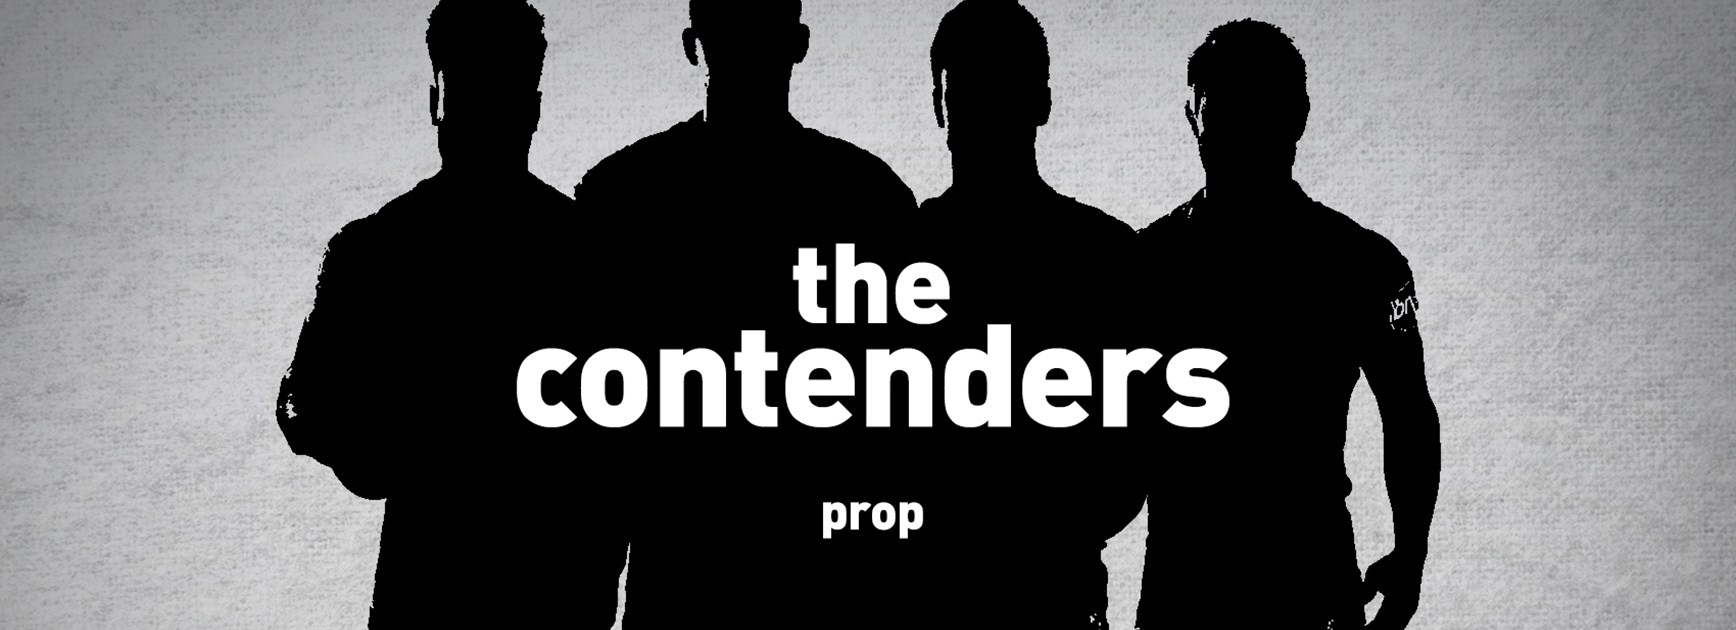 The Contenders: Prop